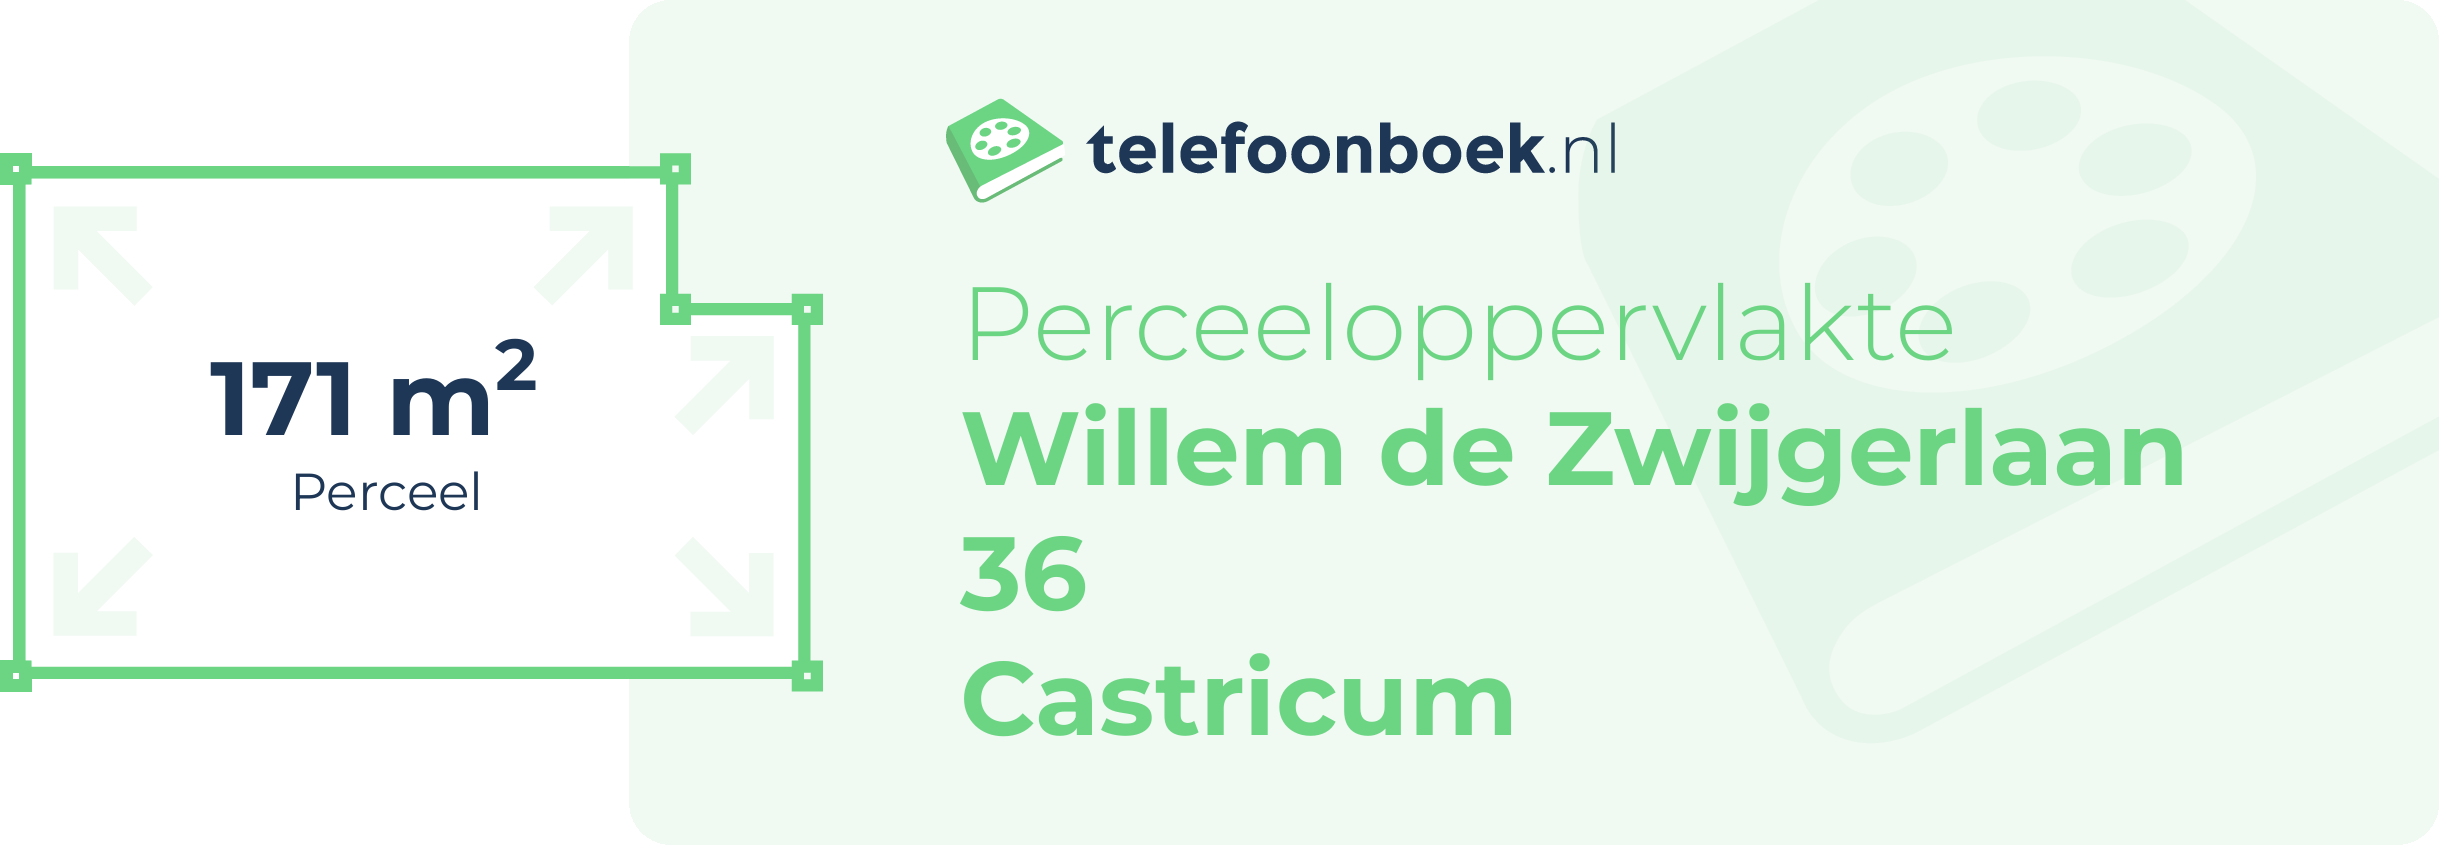 Perceeloppervlakte Willem De Zwijgerlaan 36 Castricum